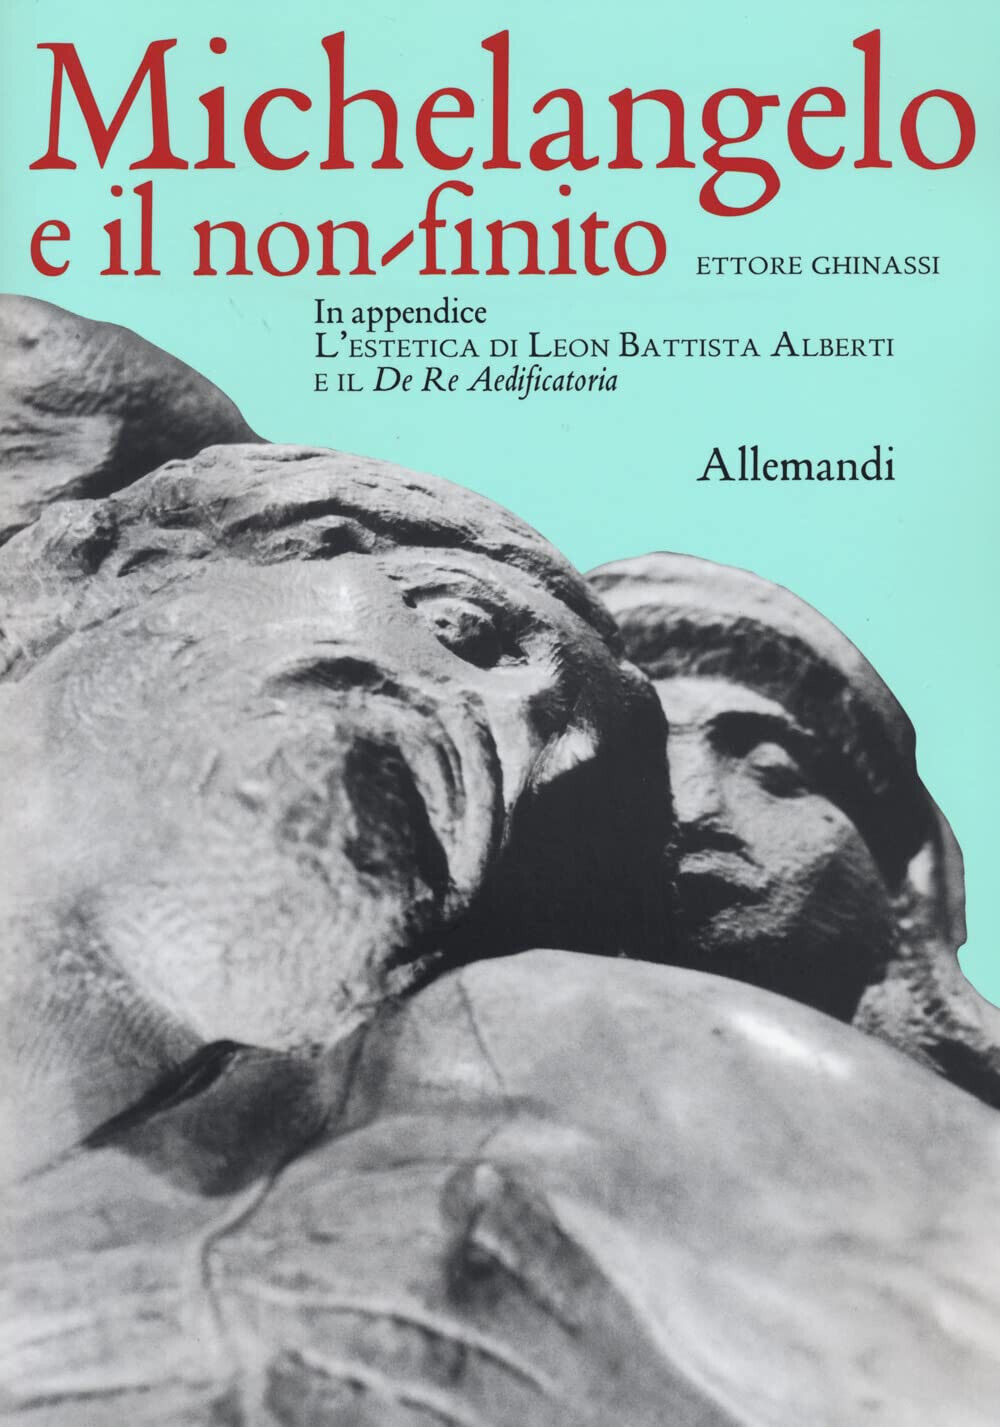 Michelangelo e il non finito - Ettore Ghinassi - Allemandi, 2022 libro usato